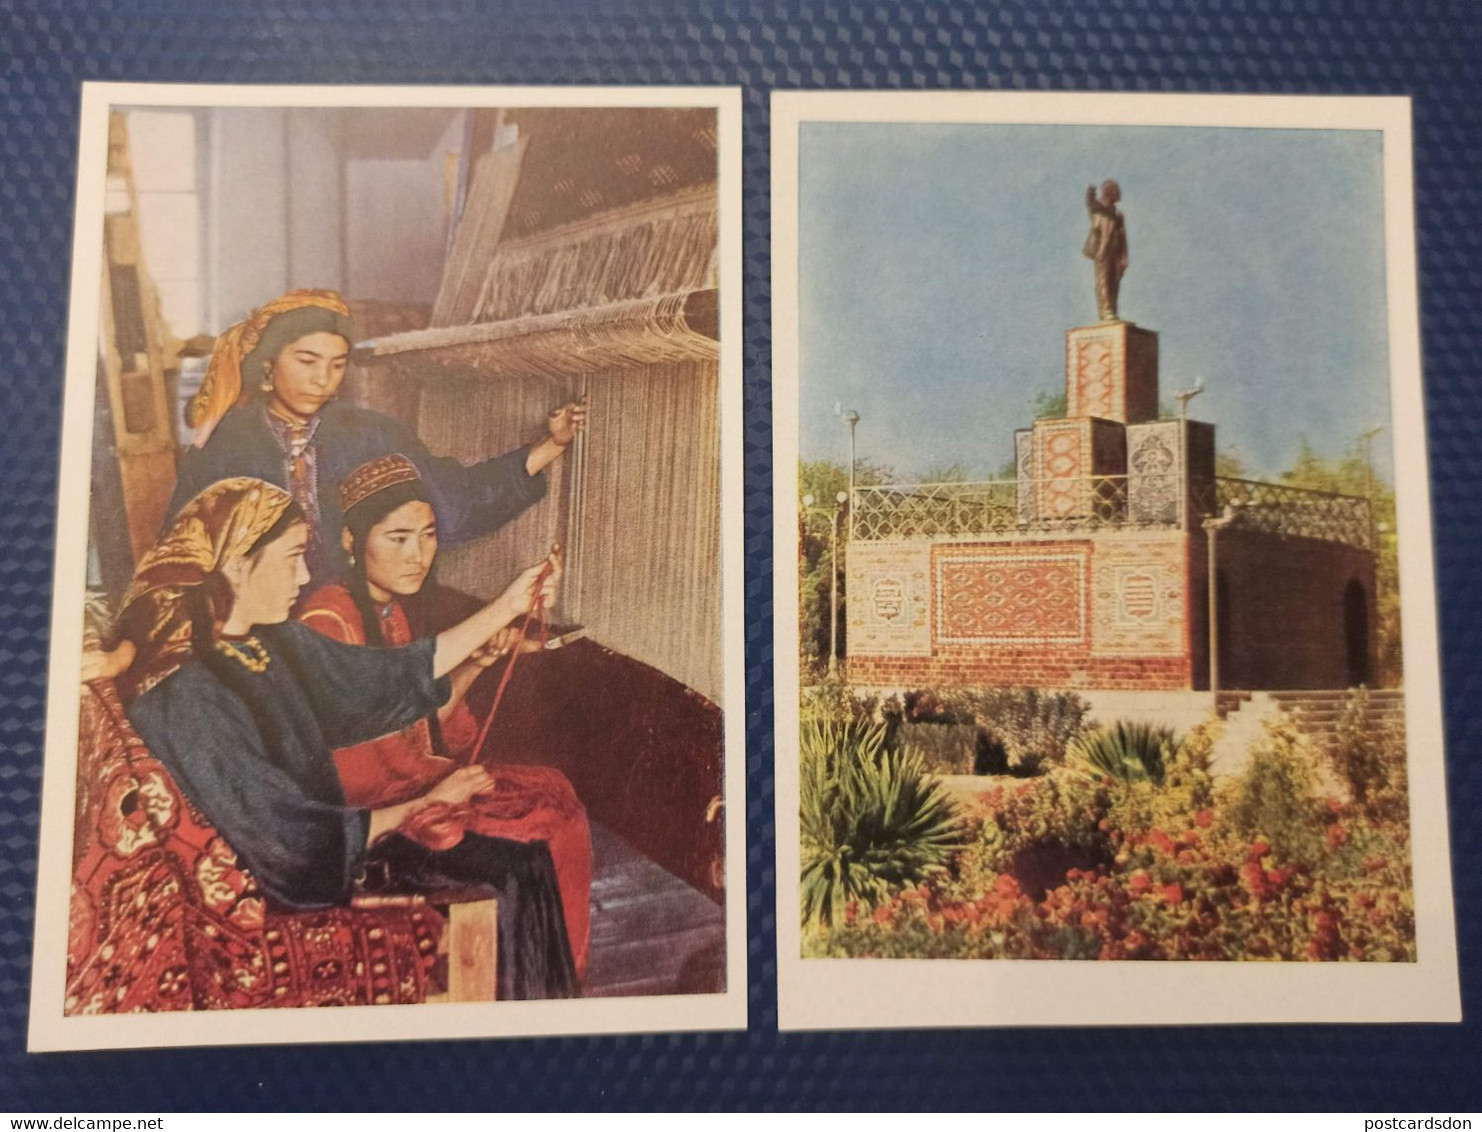 Russian Asia. Turkmenistan. - 12 Postcards Lot - 1962 Lenin Monument / Traditional Costume - Carpet - - Turkménistan